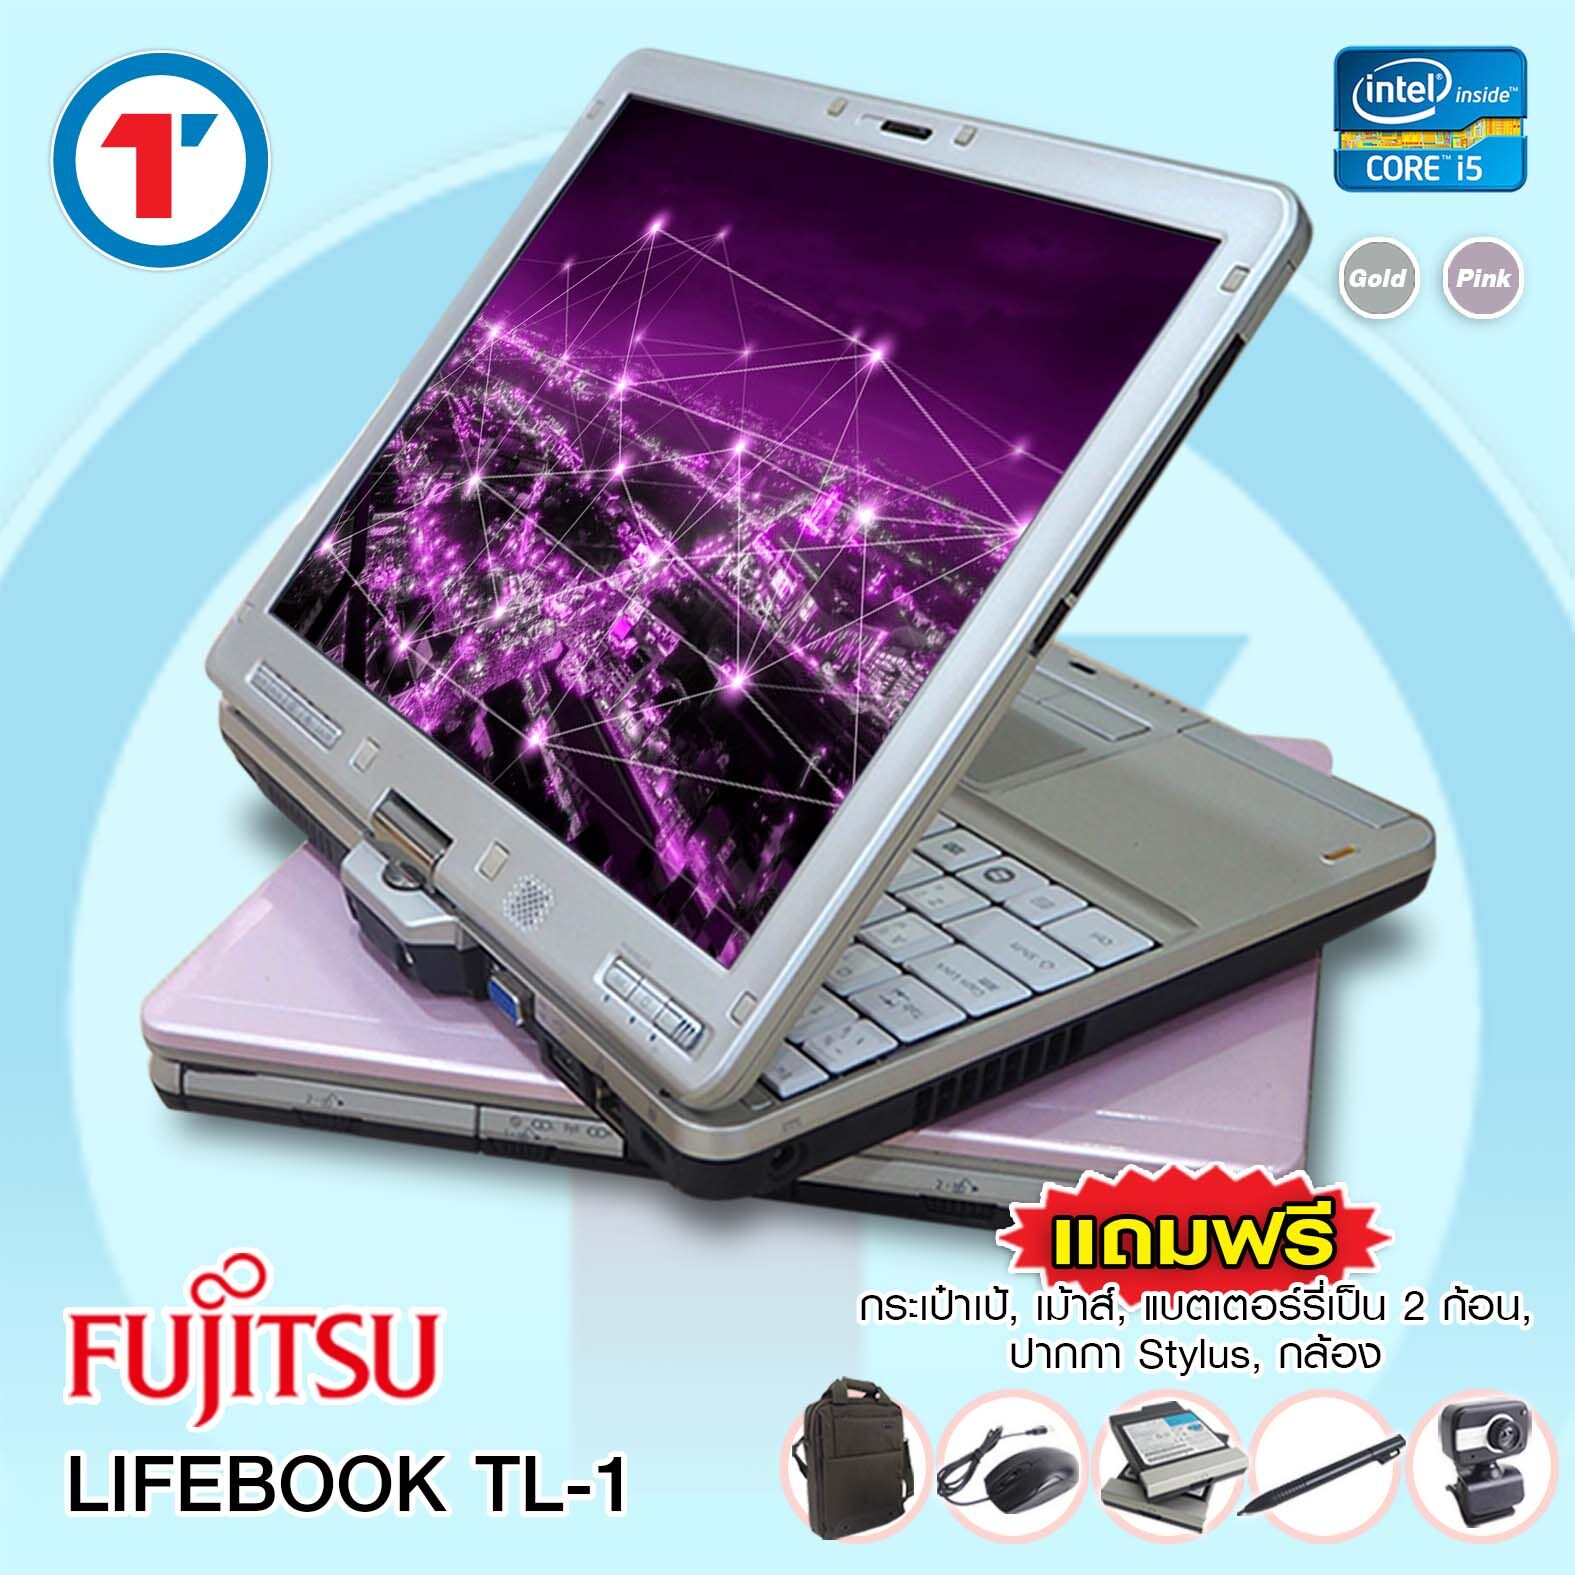 โน๊ตบุ๊ค/แท็บเล็ต ​Fujitsu LifeBook TL1 - Core i5 Gen2 - RAM 2 GB, SSD 30 GB สัมผัสหน้าจอ แถมฟรี 5 รายการ สินค้าหมดสัญญาเช่าจากสำนักงาน สภาพดี มีประกัน By Totalsolution